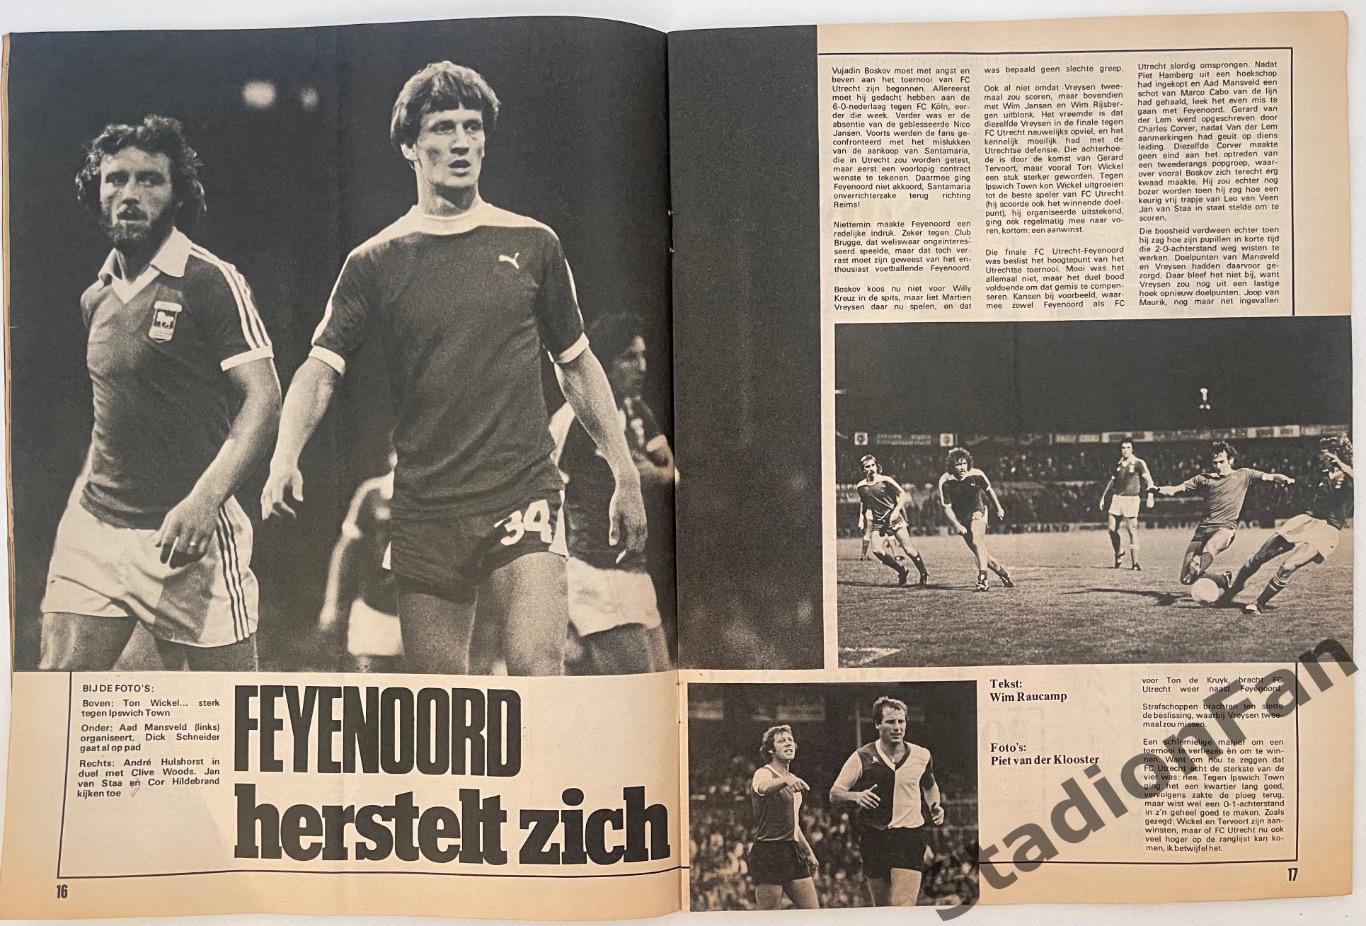 Журнал Voetbal nr.31 - 1977 год. 4